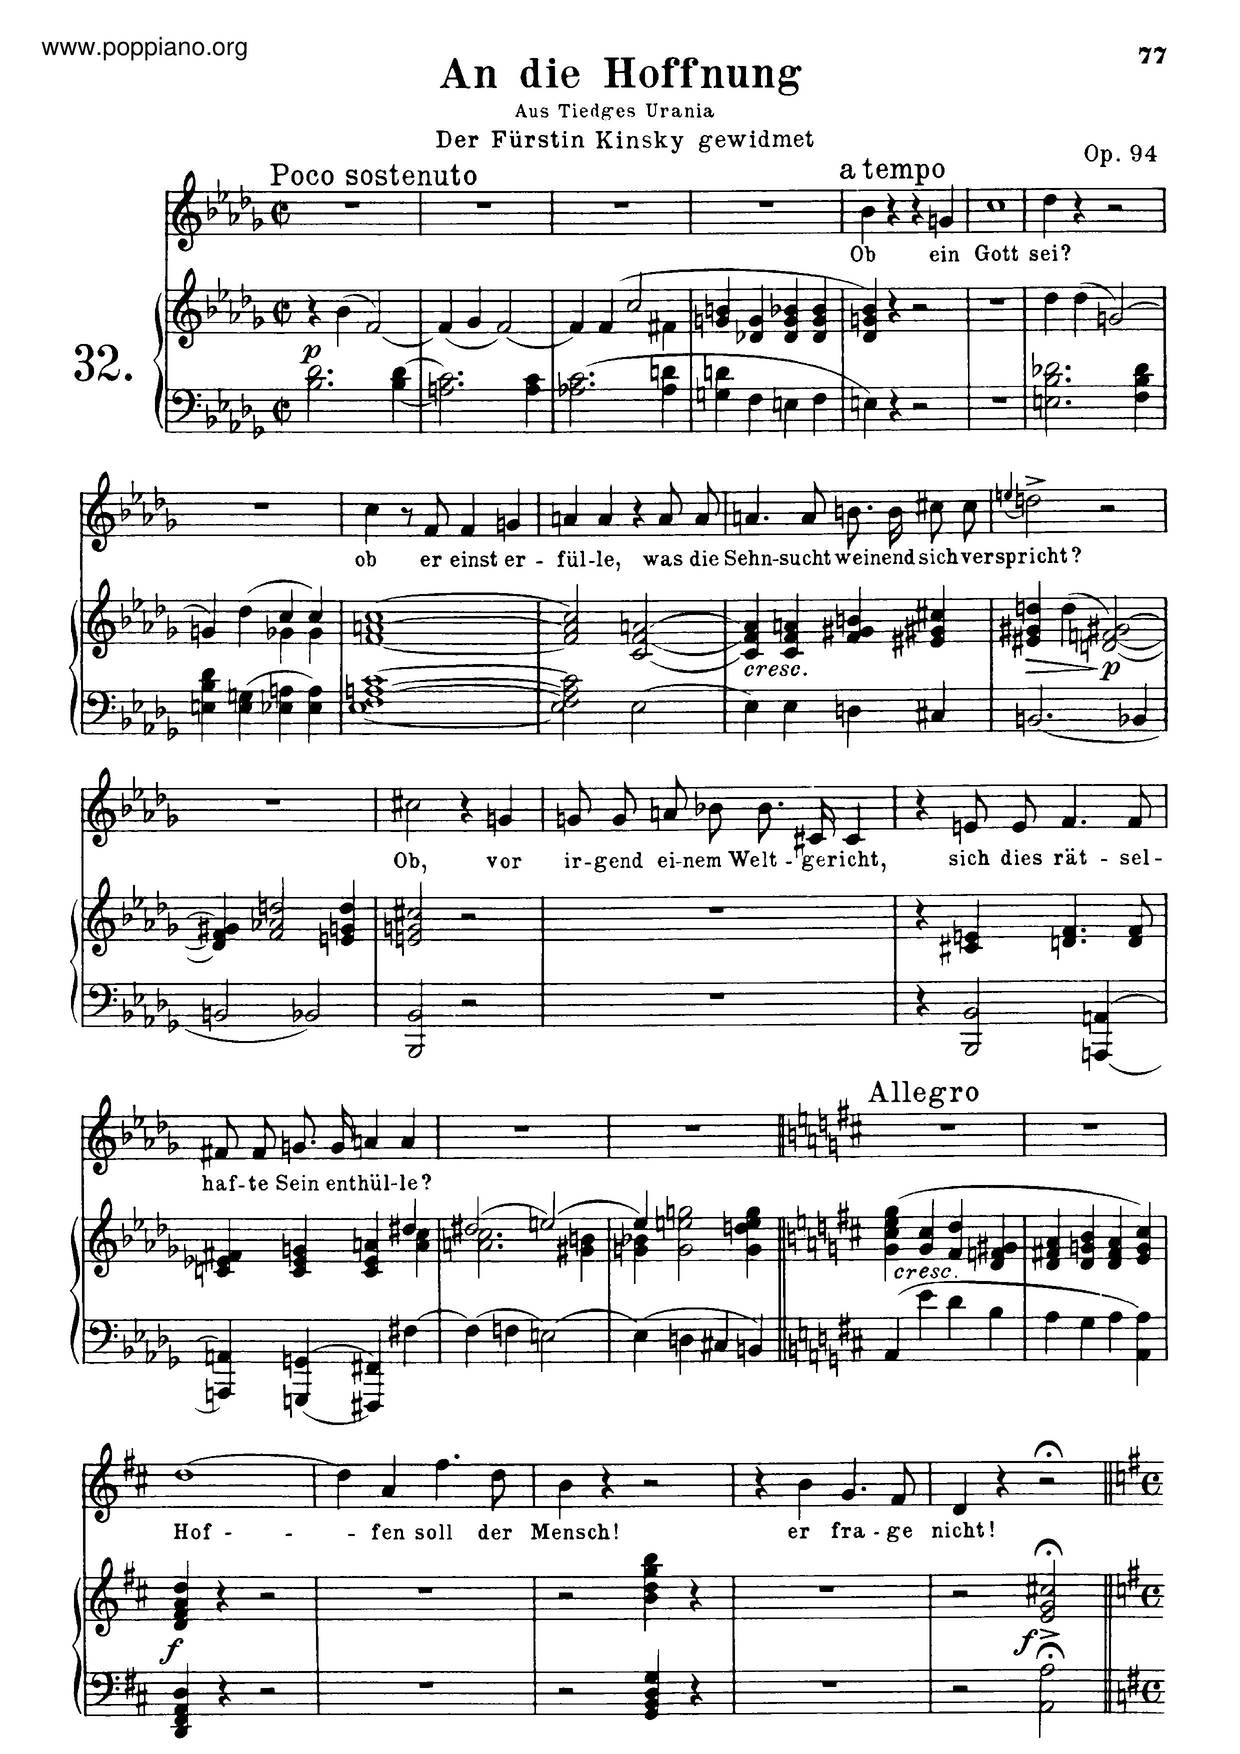 An Die Hoffnung, Op. 94 Score